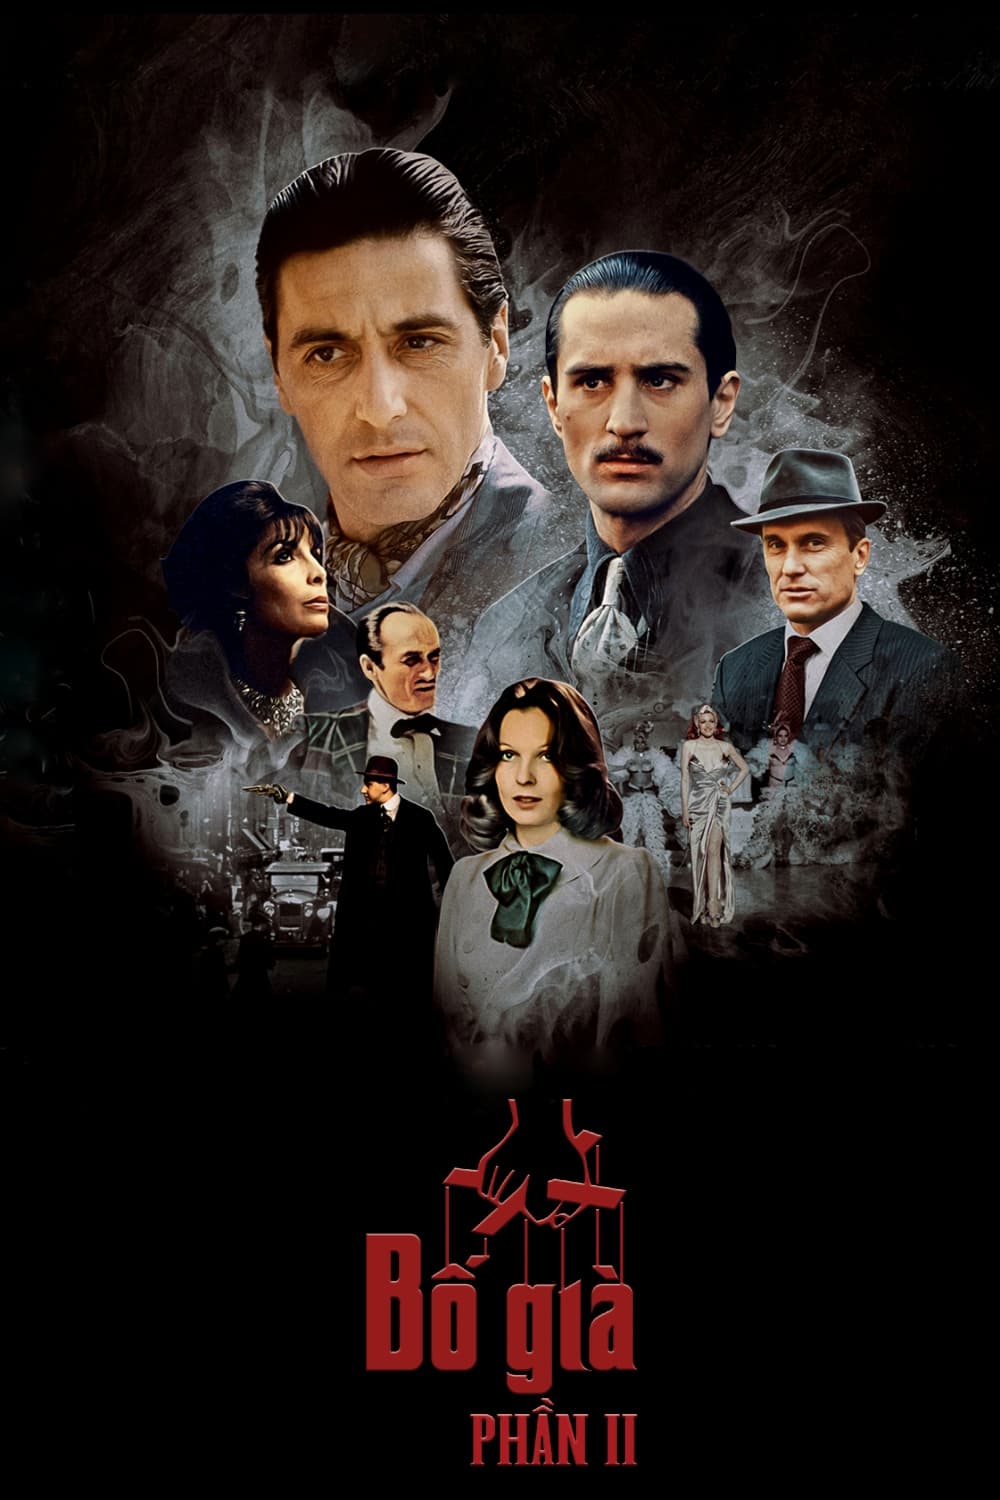 Bố Già 2 (The Godfather Part II) [1974]